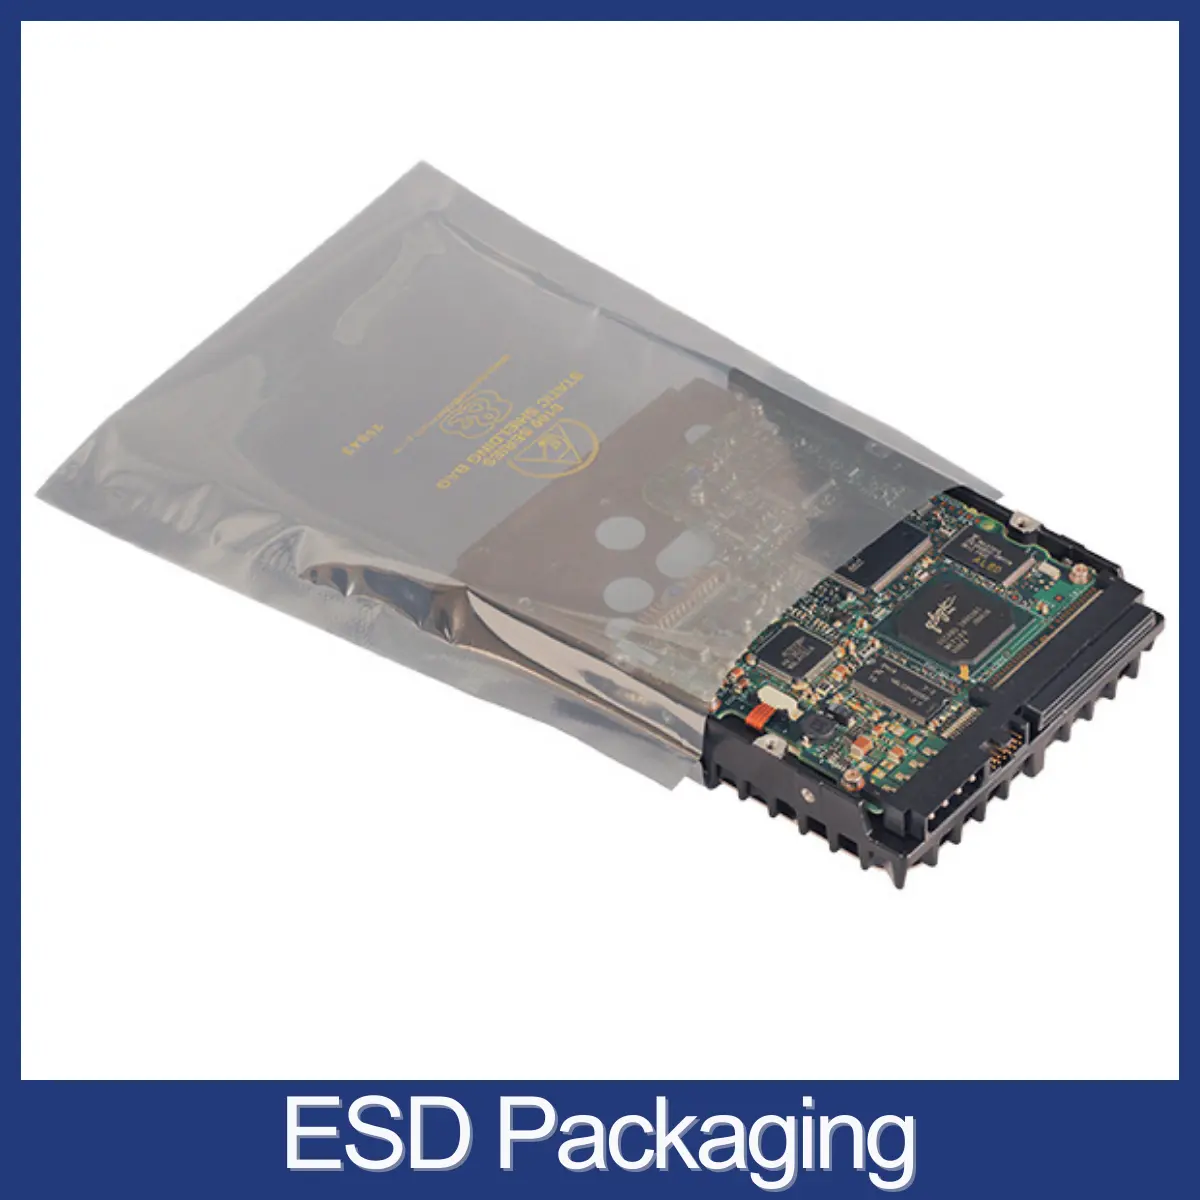 ESD Packaging